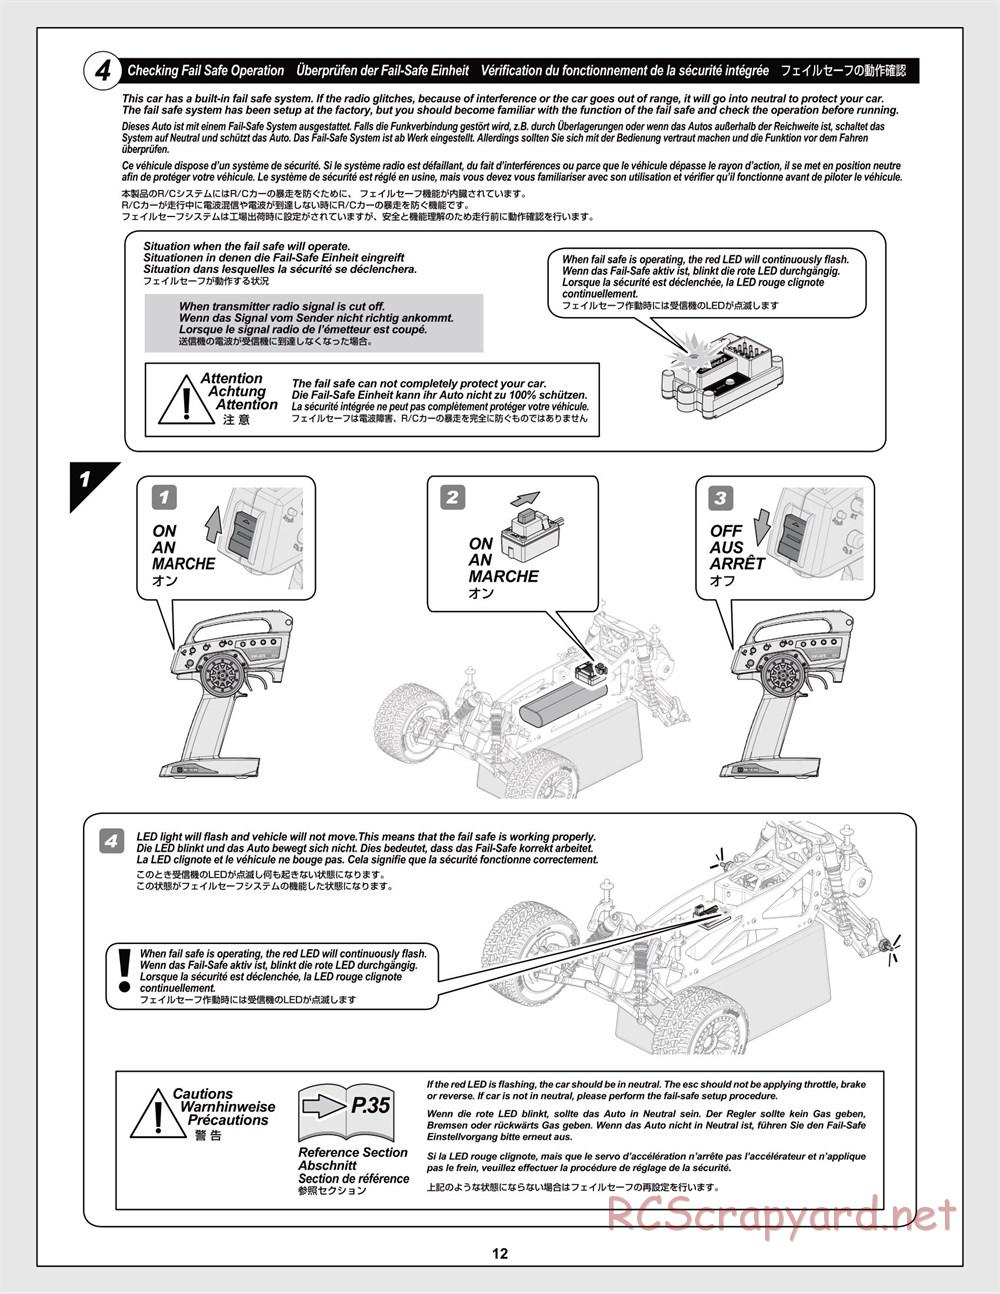 HPI - Jumpshot MT Flux - Manual - Page 12